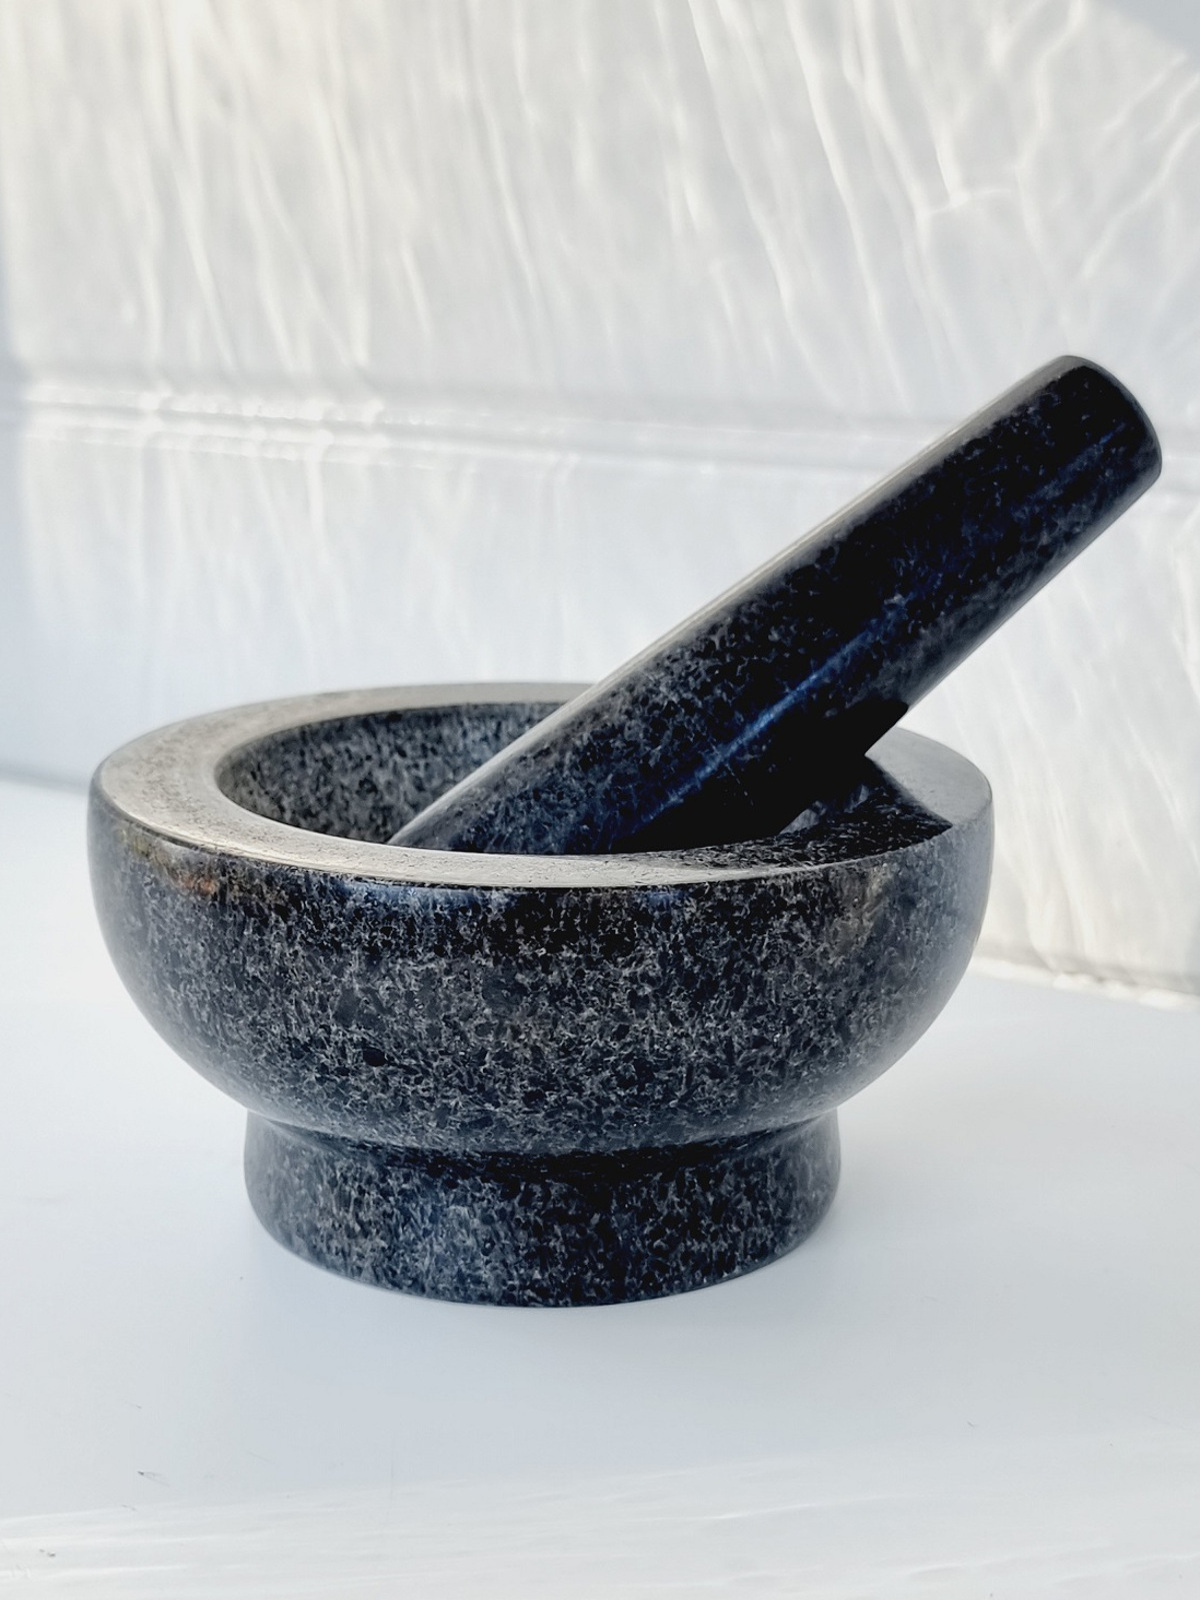 svart-mortel-i-granit-med-stot-1